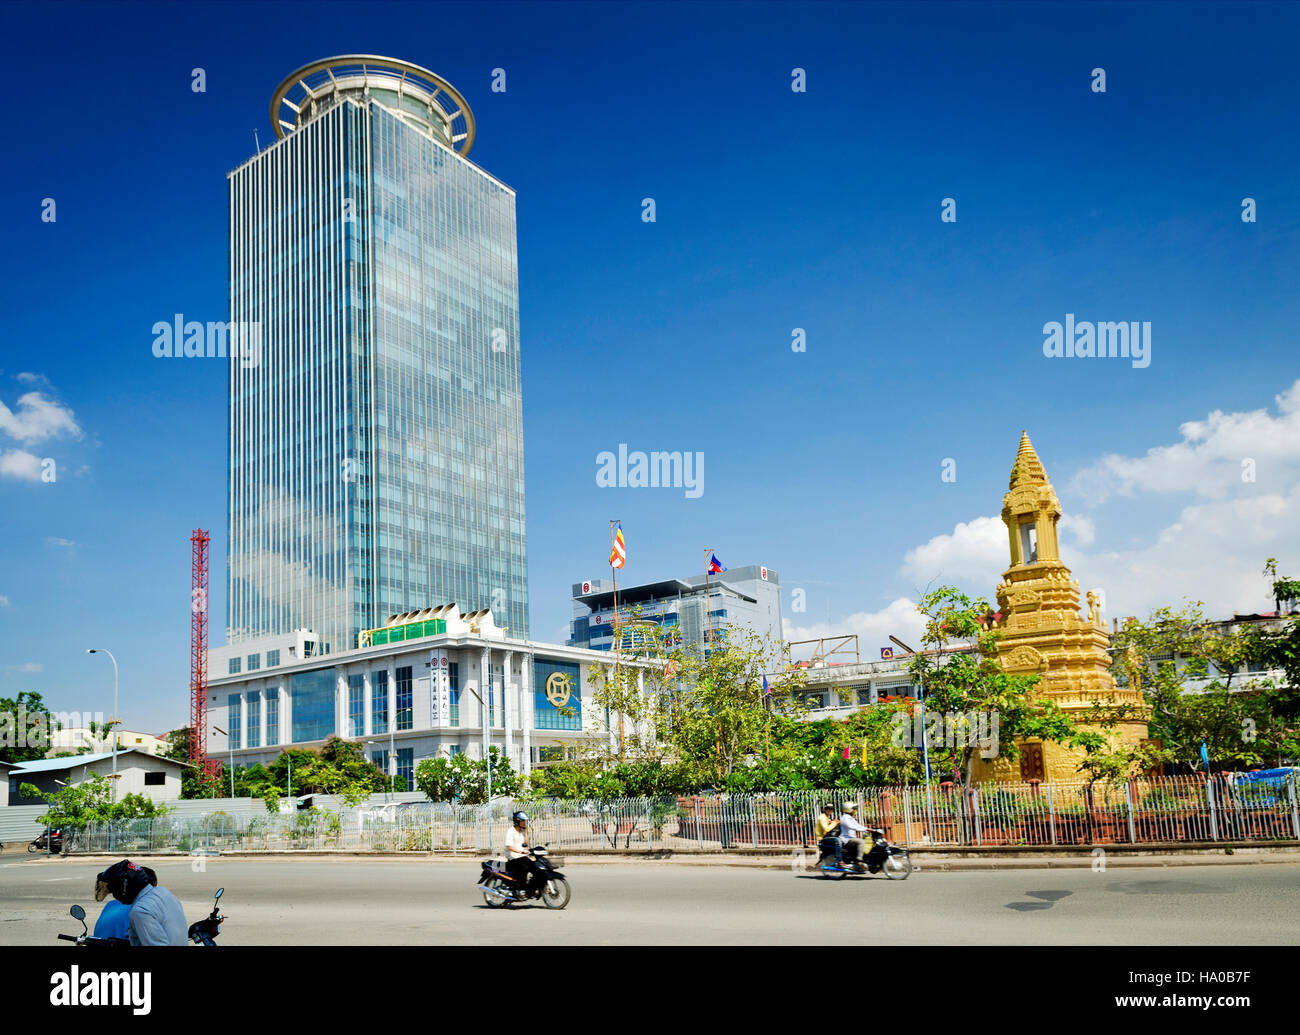 Canadia Bank tower architettura moderna costruzione grattacielo nel centro di phnom penh cambogia città Foto Stock